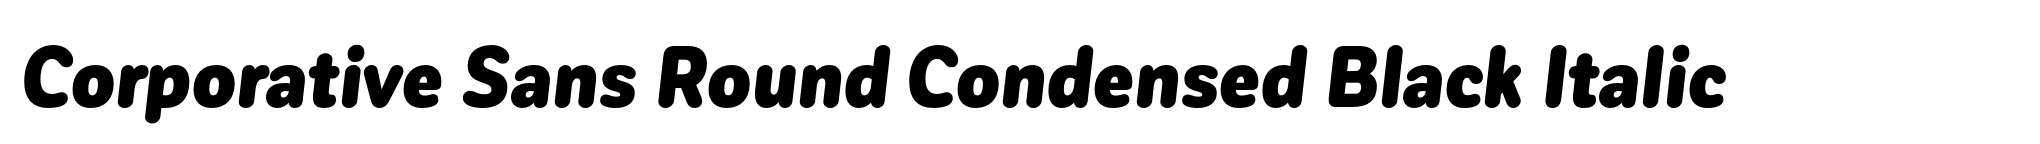 Corporative Sans Round Condensed Black Italic image